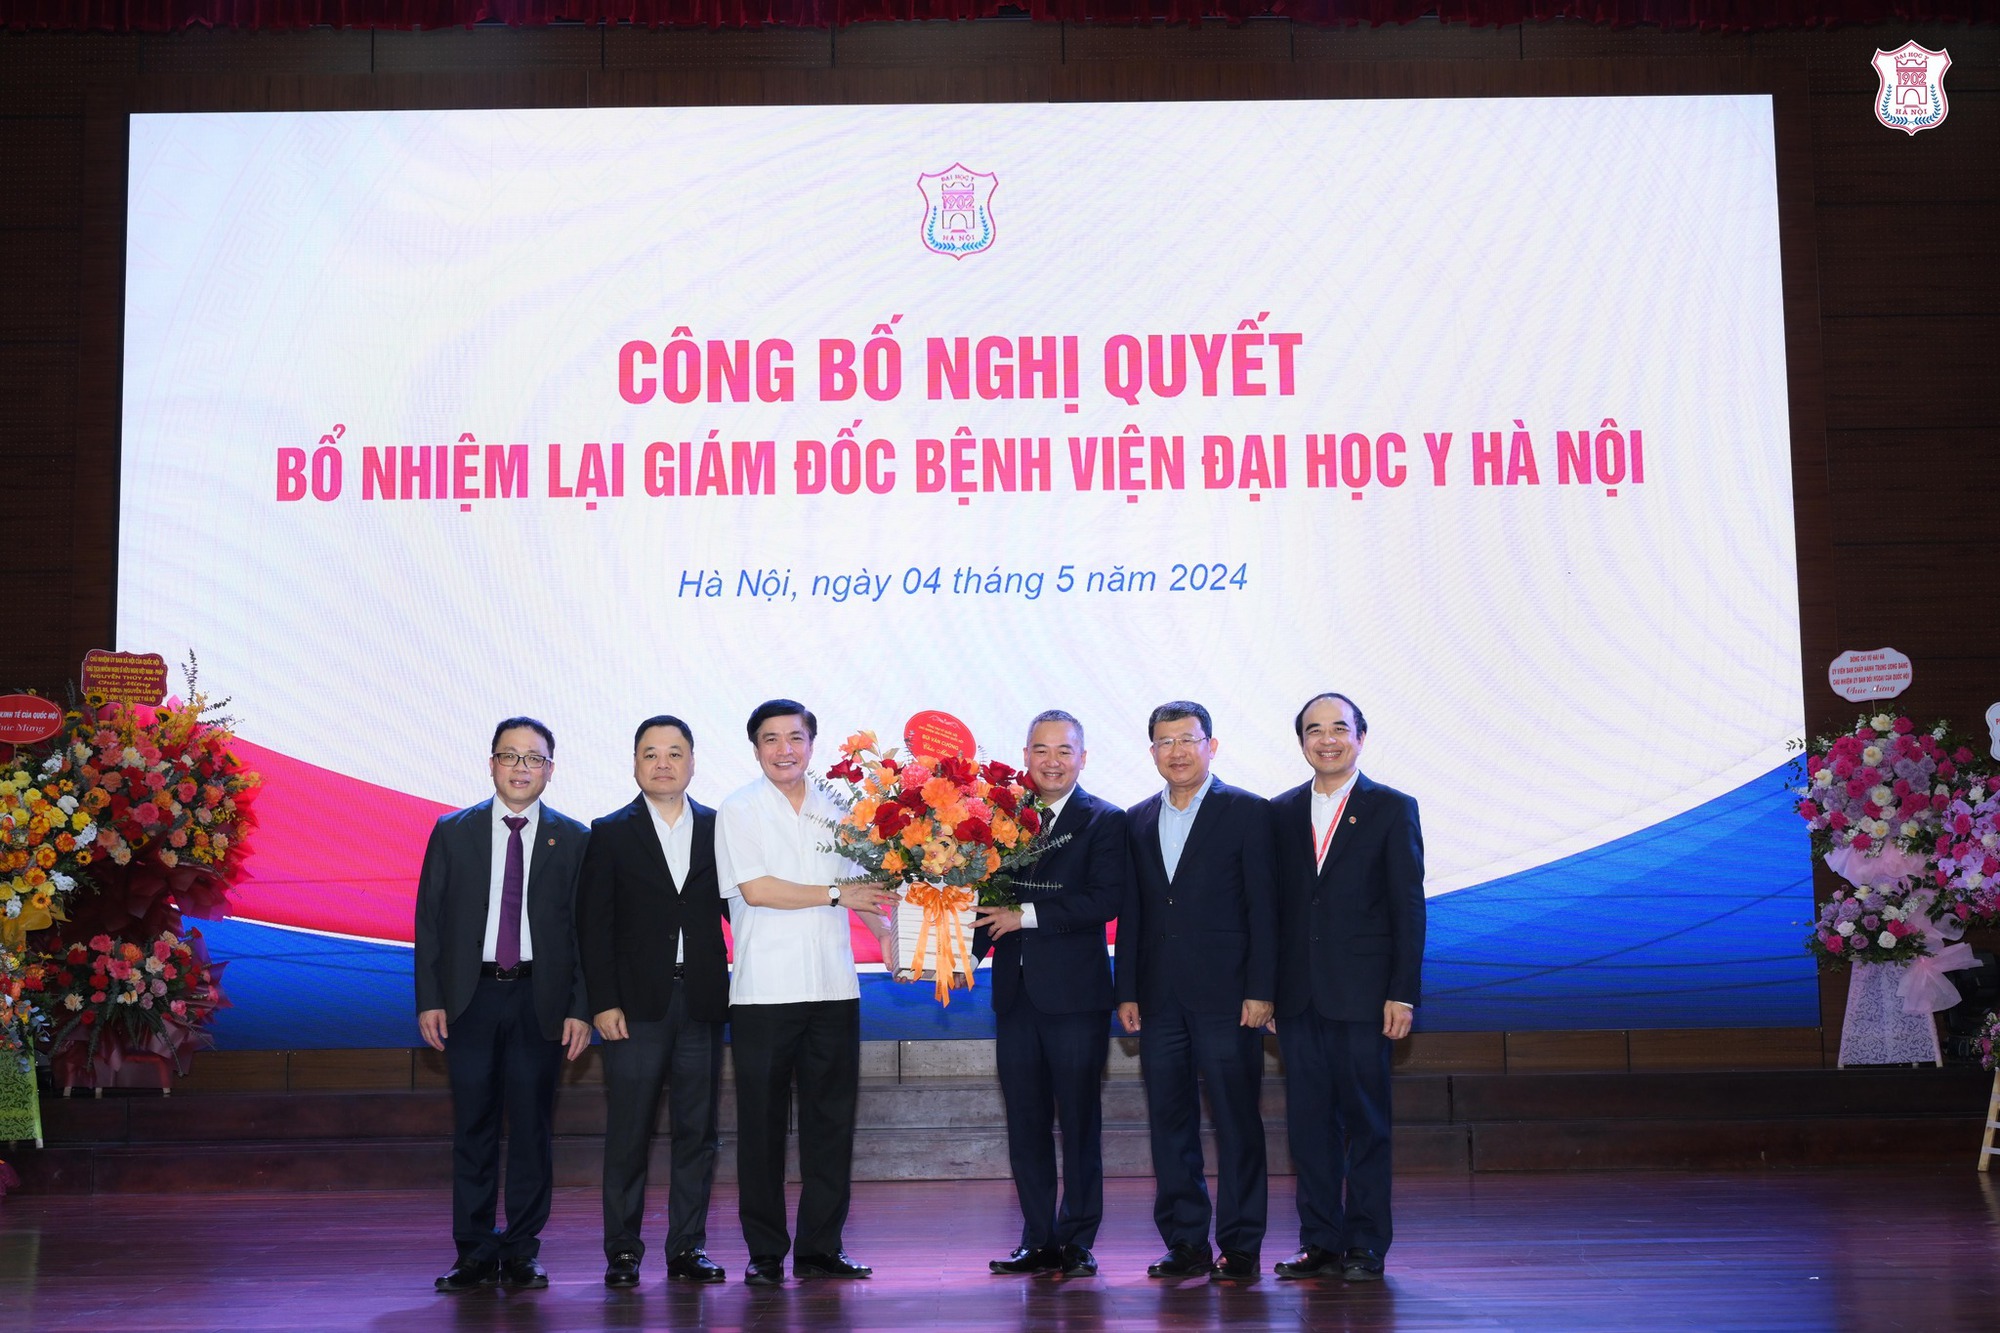 PGS.TS Nguyễn Lân Hiếu tiếp tục được bổ nhiệm làm Giám đốc Bệnh viện Đại học Y Hà Nội - Ảnh 2.